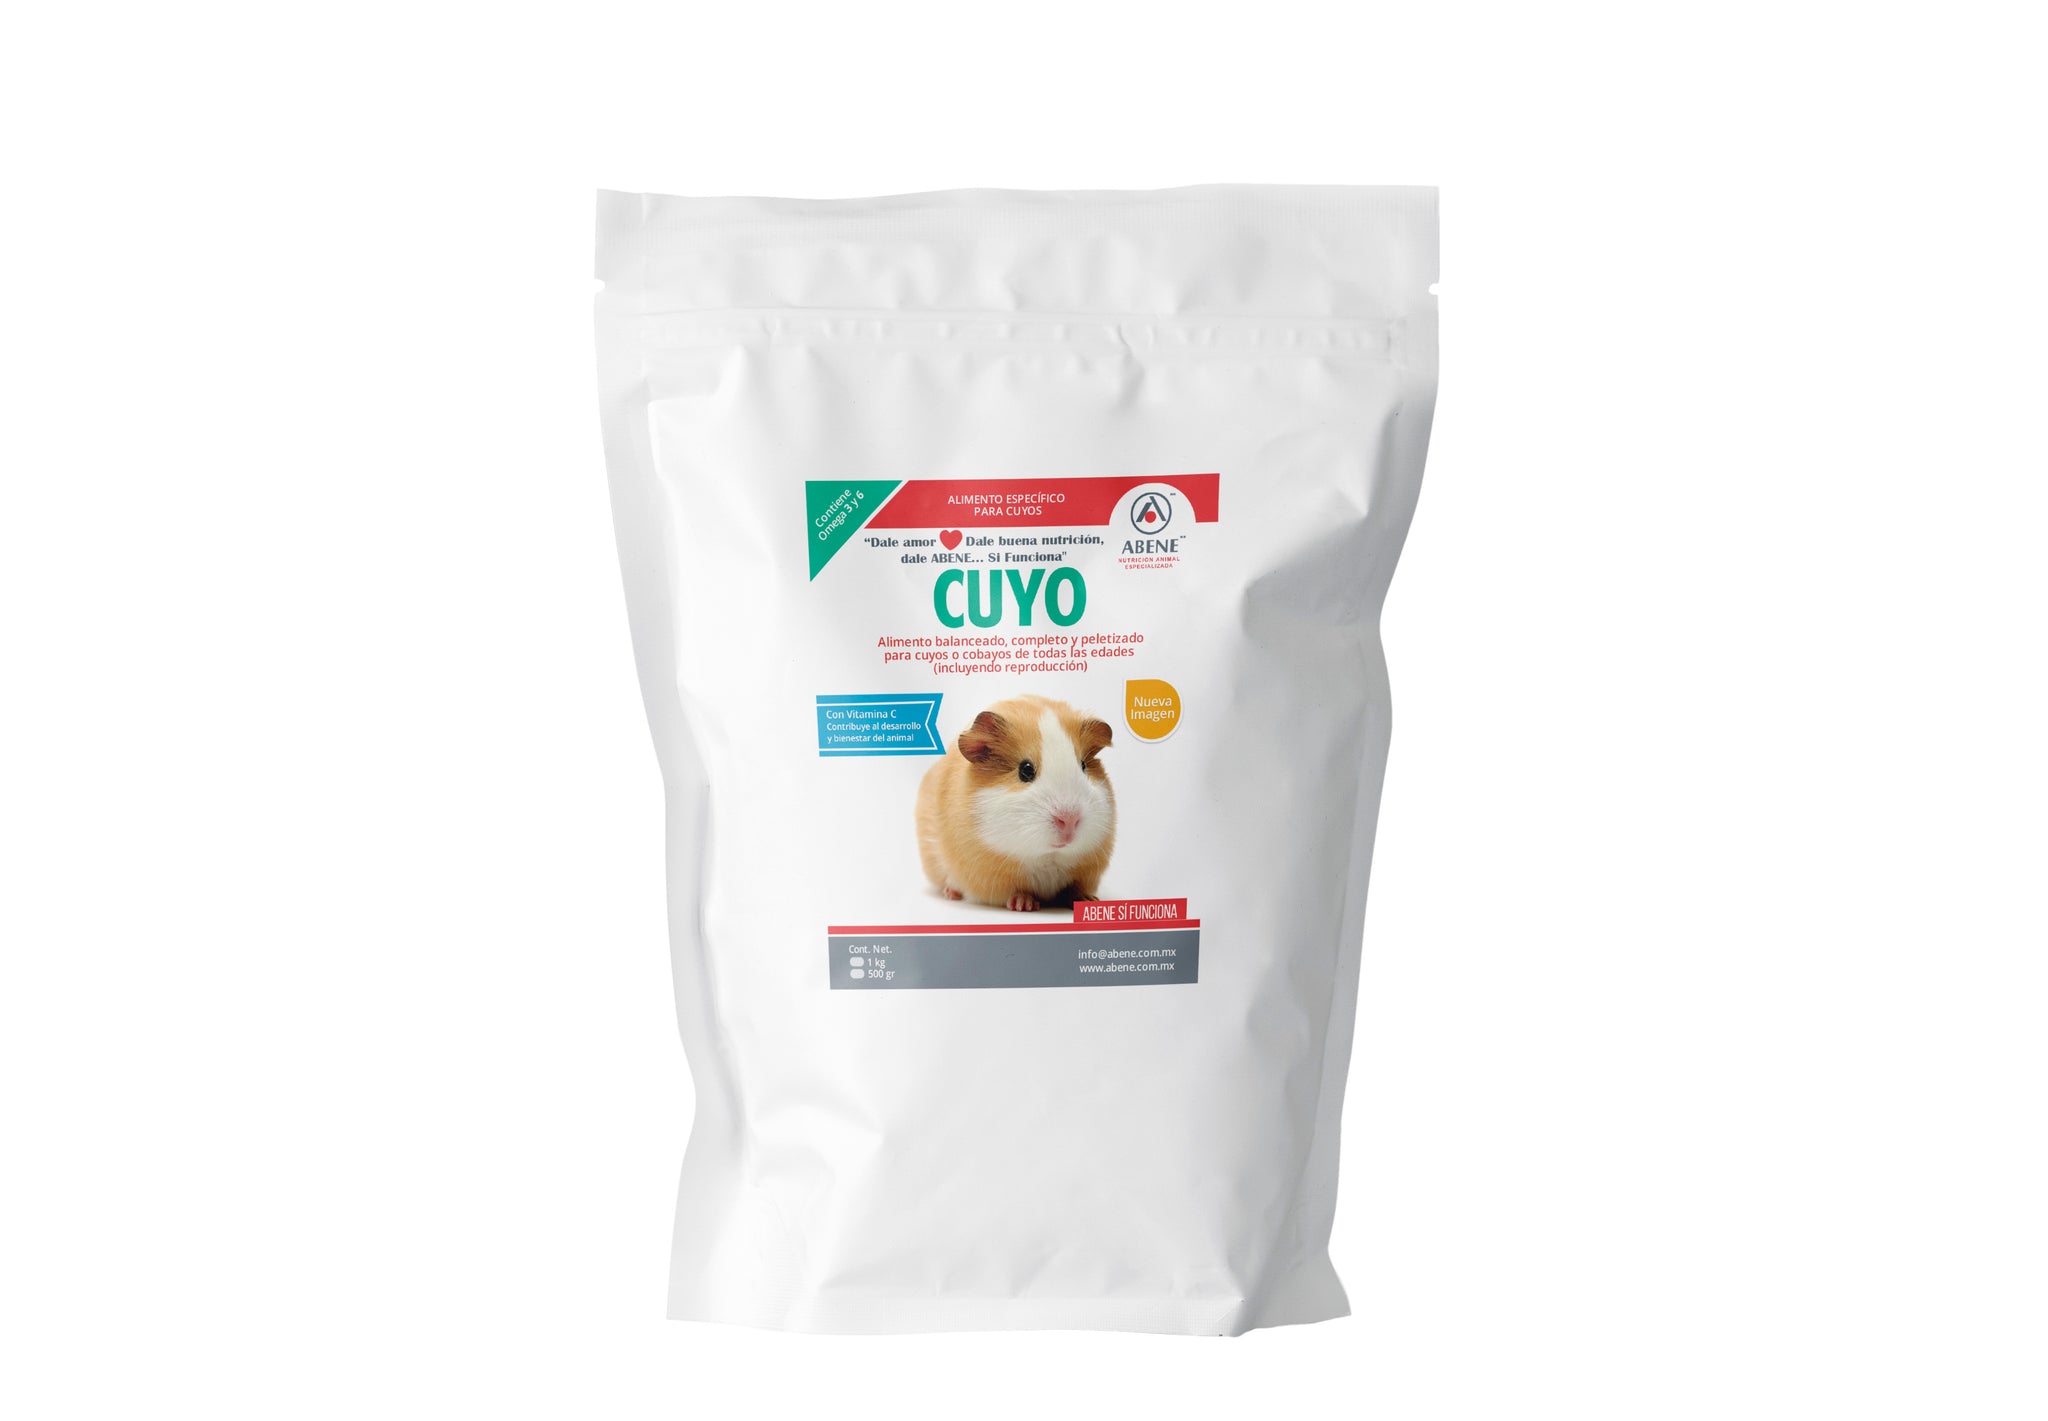 Cuyo Vita "C" (complemento nutricional de alto contenido de vitamina C)